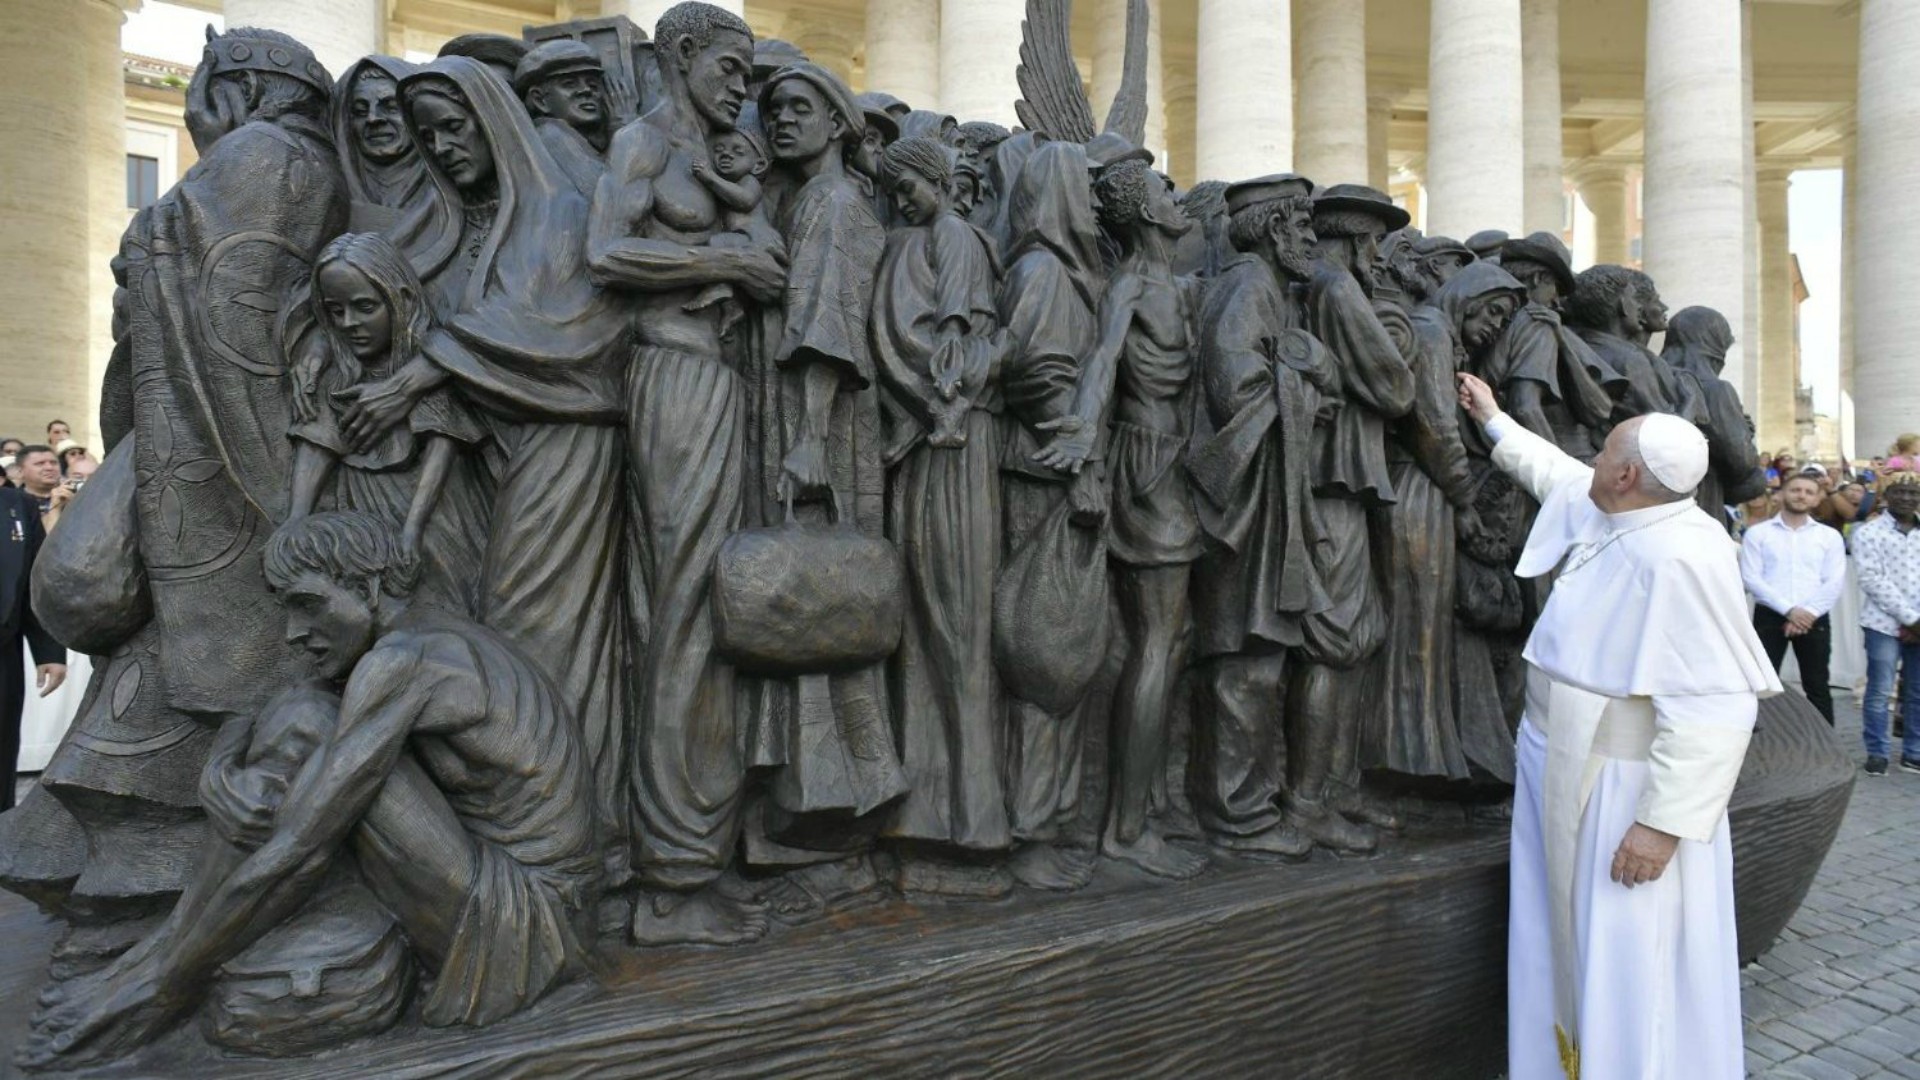 Le 29 septembre 2019, à l’issue de la 105e journée mondiale du migrant et du réfugié, le pape François avait inauguré Place Saint-Pierre une statue en bronze représentant 140 migrants | © Vatican Media